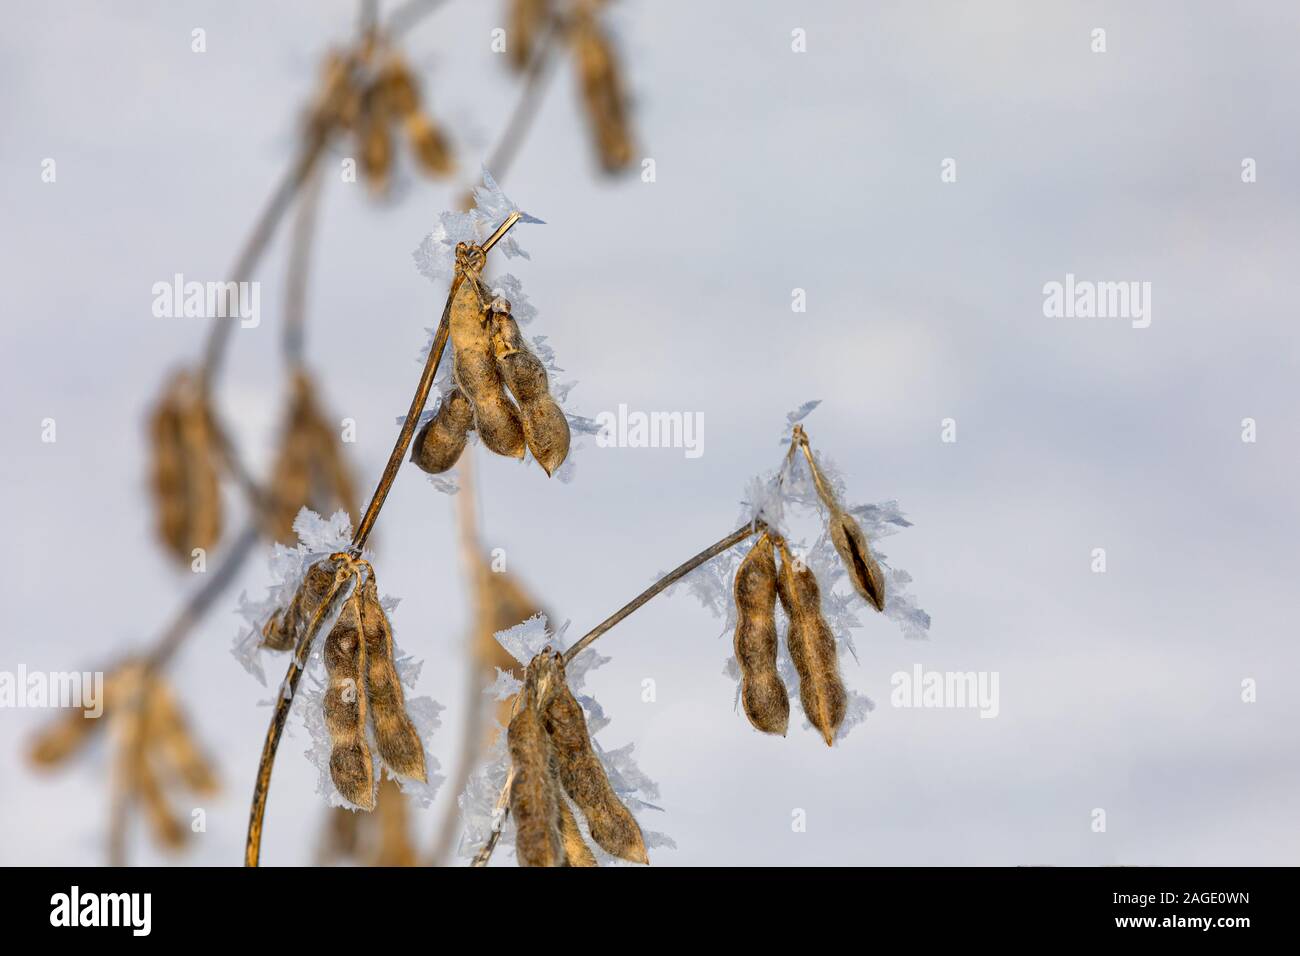 Nahaufnahme des ständigen Sojapflanzen im Schnee Soja Bauernhof Feld. Schneeflocken und Eiskristalle auf braun Samenkapseln. Verzögerte Ernte im Jahr 2019 Stockfoto